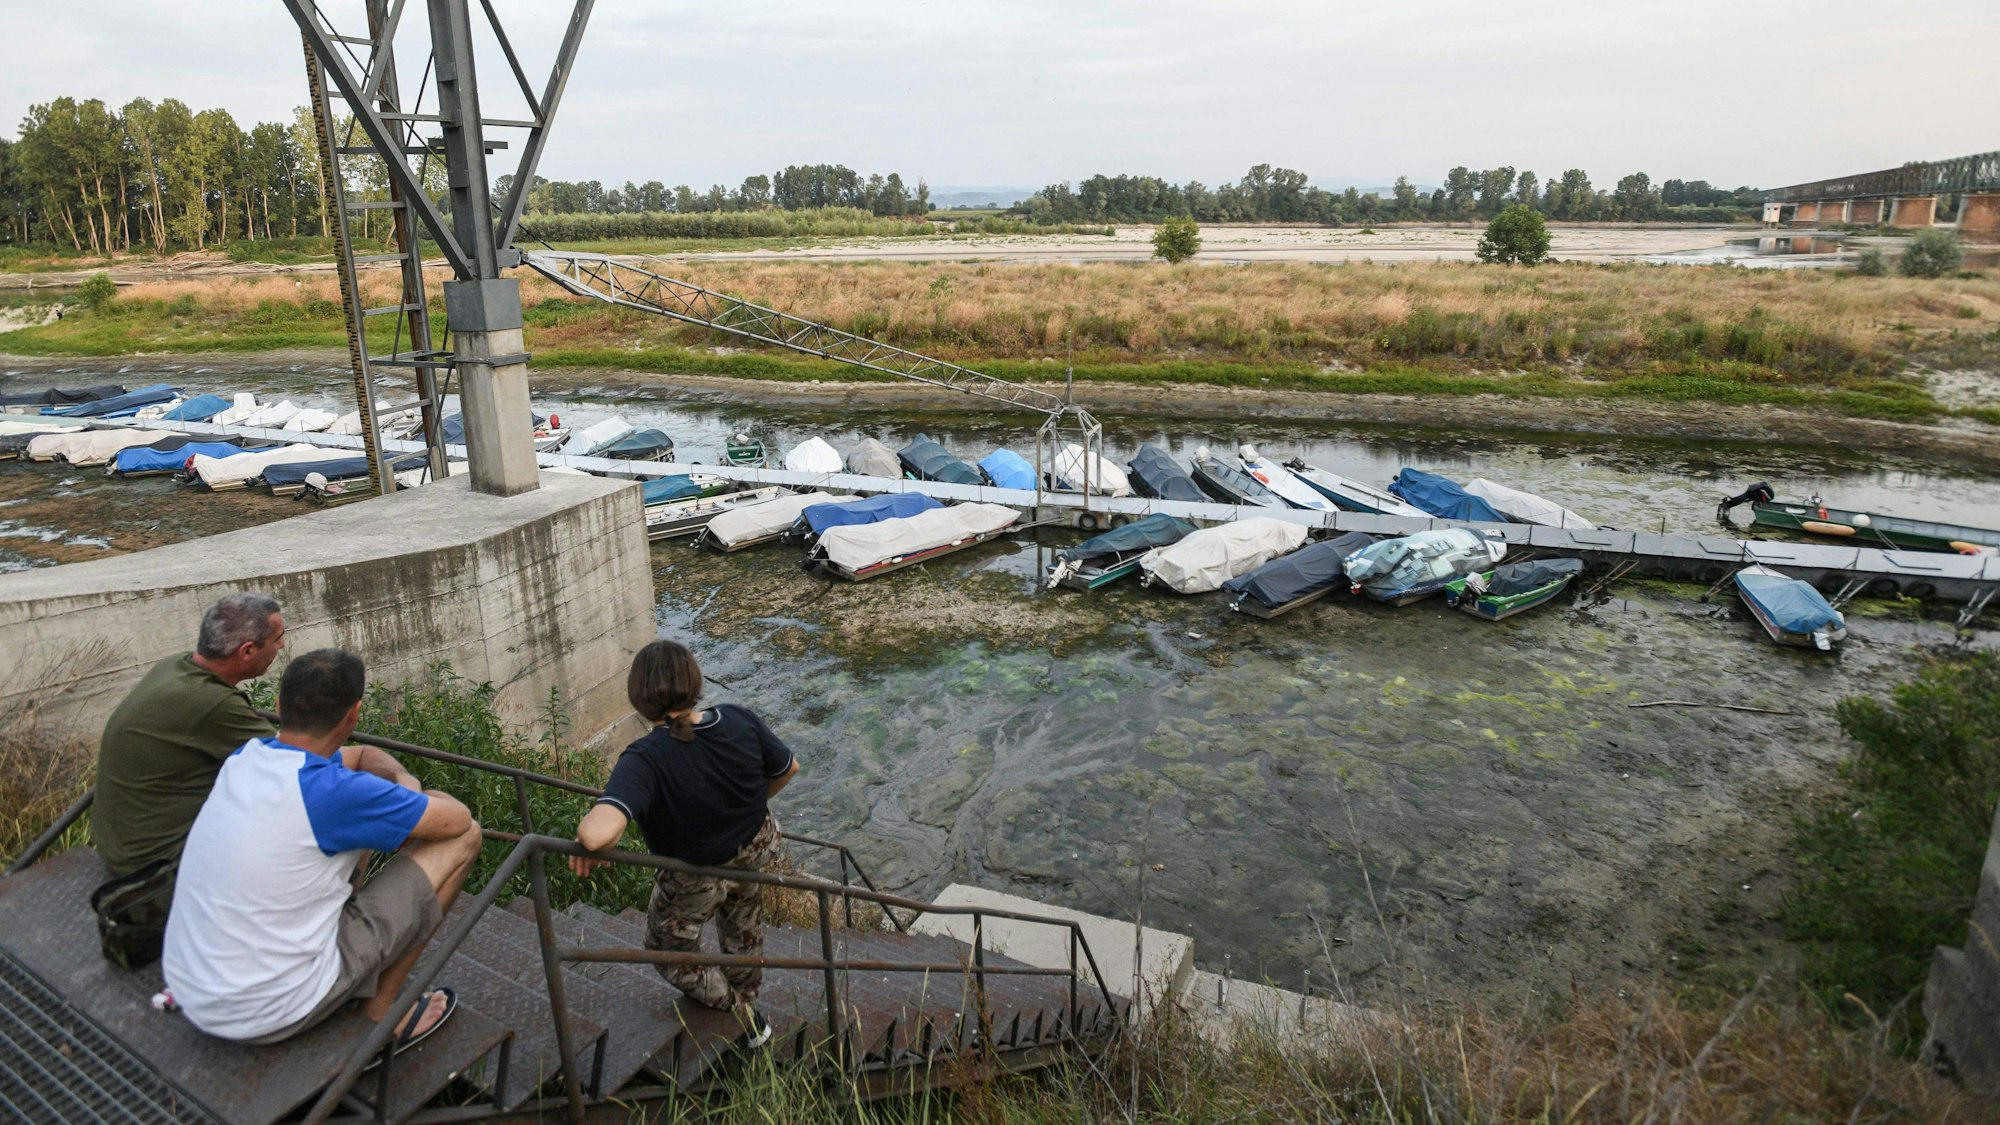 Menschen sitzen bei Ponte della Becca, in der Nähe von Linarolon in der Provinz Pavia in der Lombardei, am 17. Juni 2022 und blicken auf Boote, die bei Niedrigwasser festgemacht sind. In der Region herrscht seit vielen Tagen Dürre und Trockenheit.